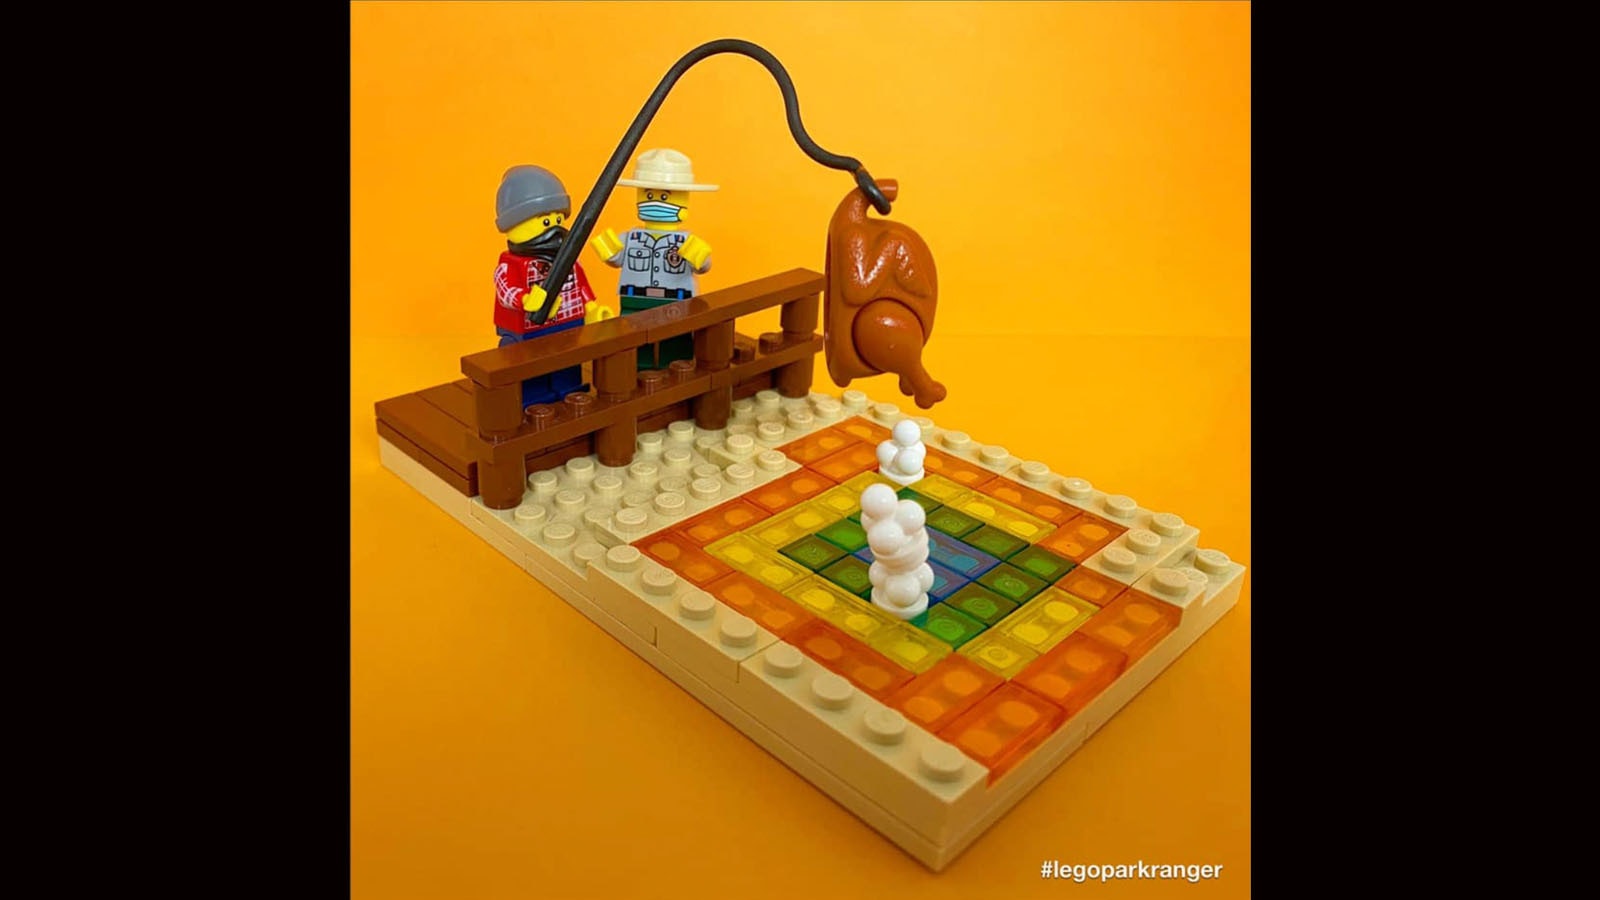 Lego park ranger